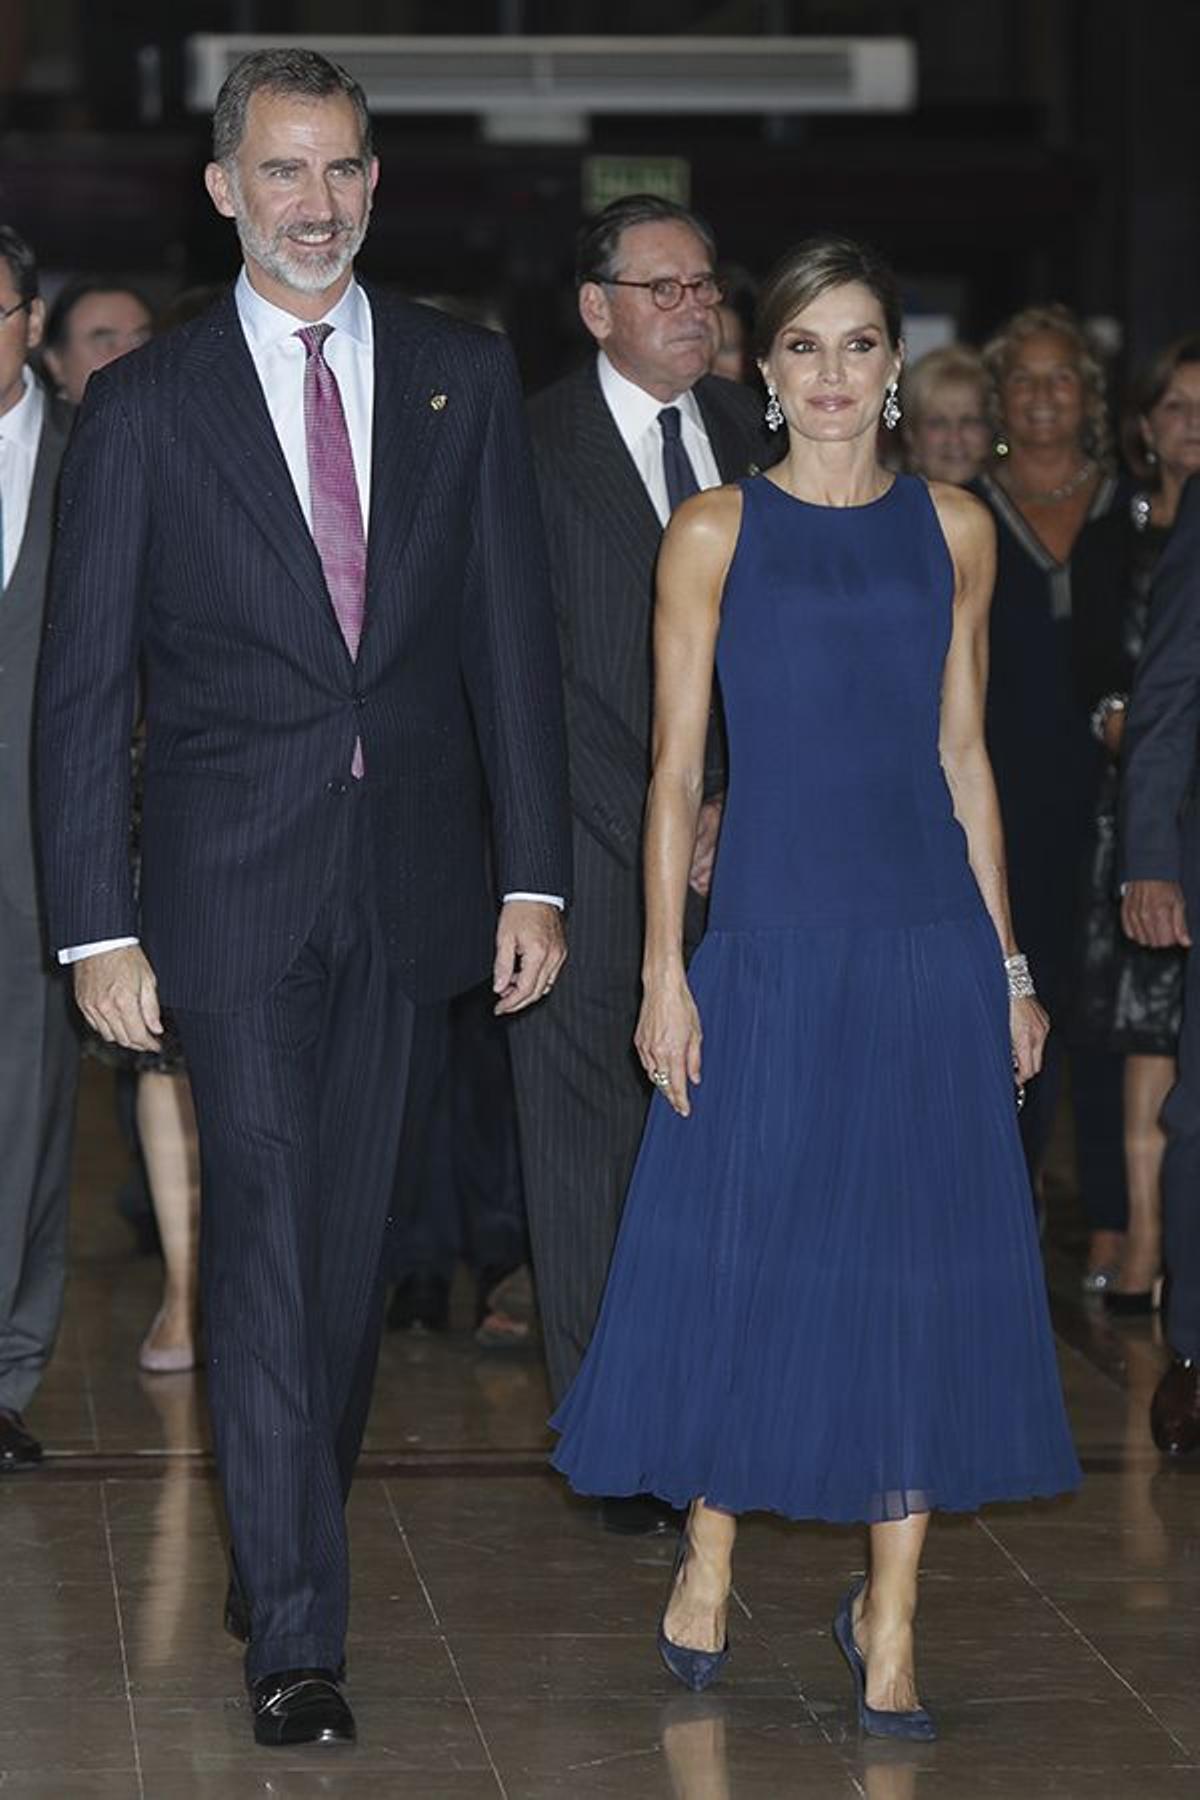 Letizia Ortiz y Felipe VI se mostraron encantados de estar en Oviedo en un evento tan especial para ellos